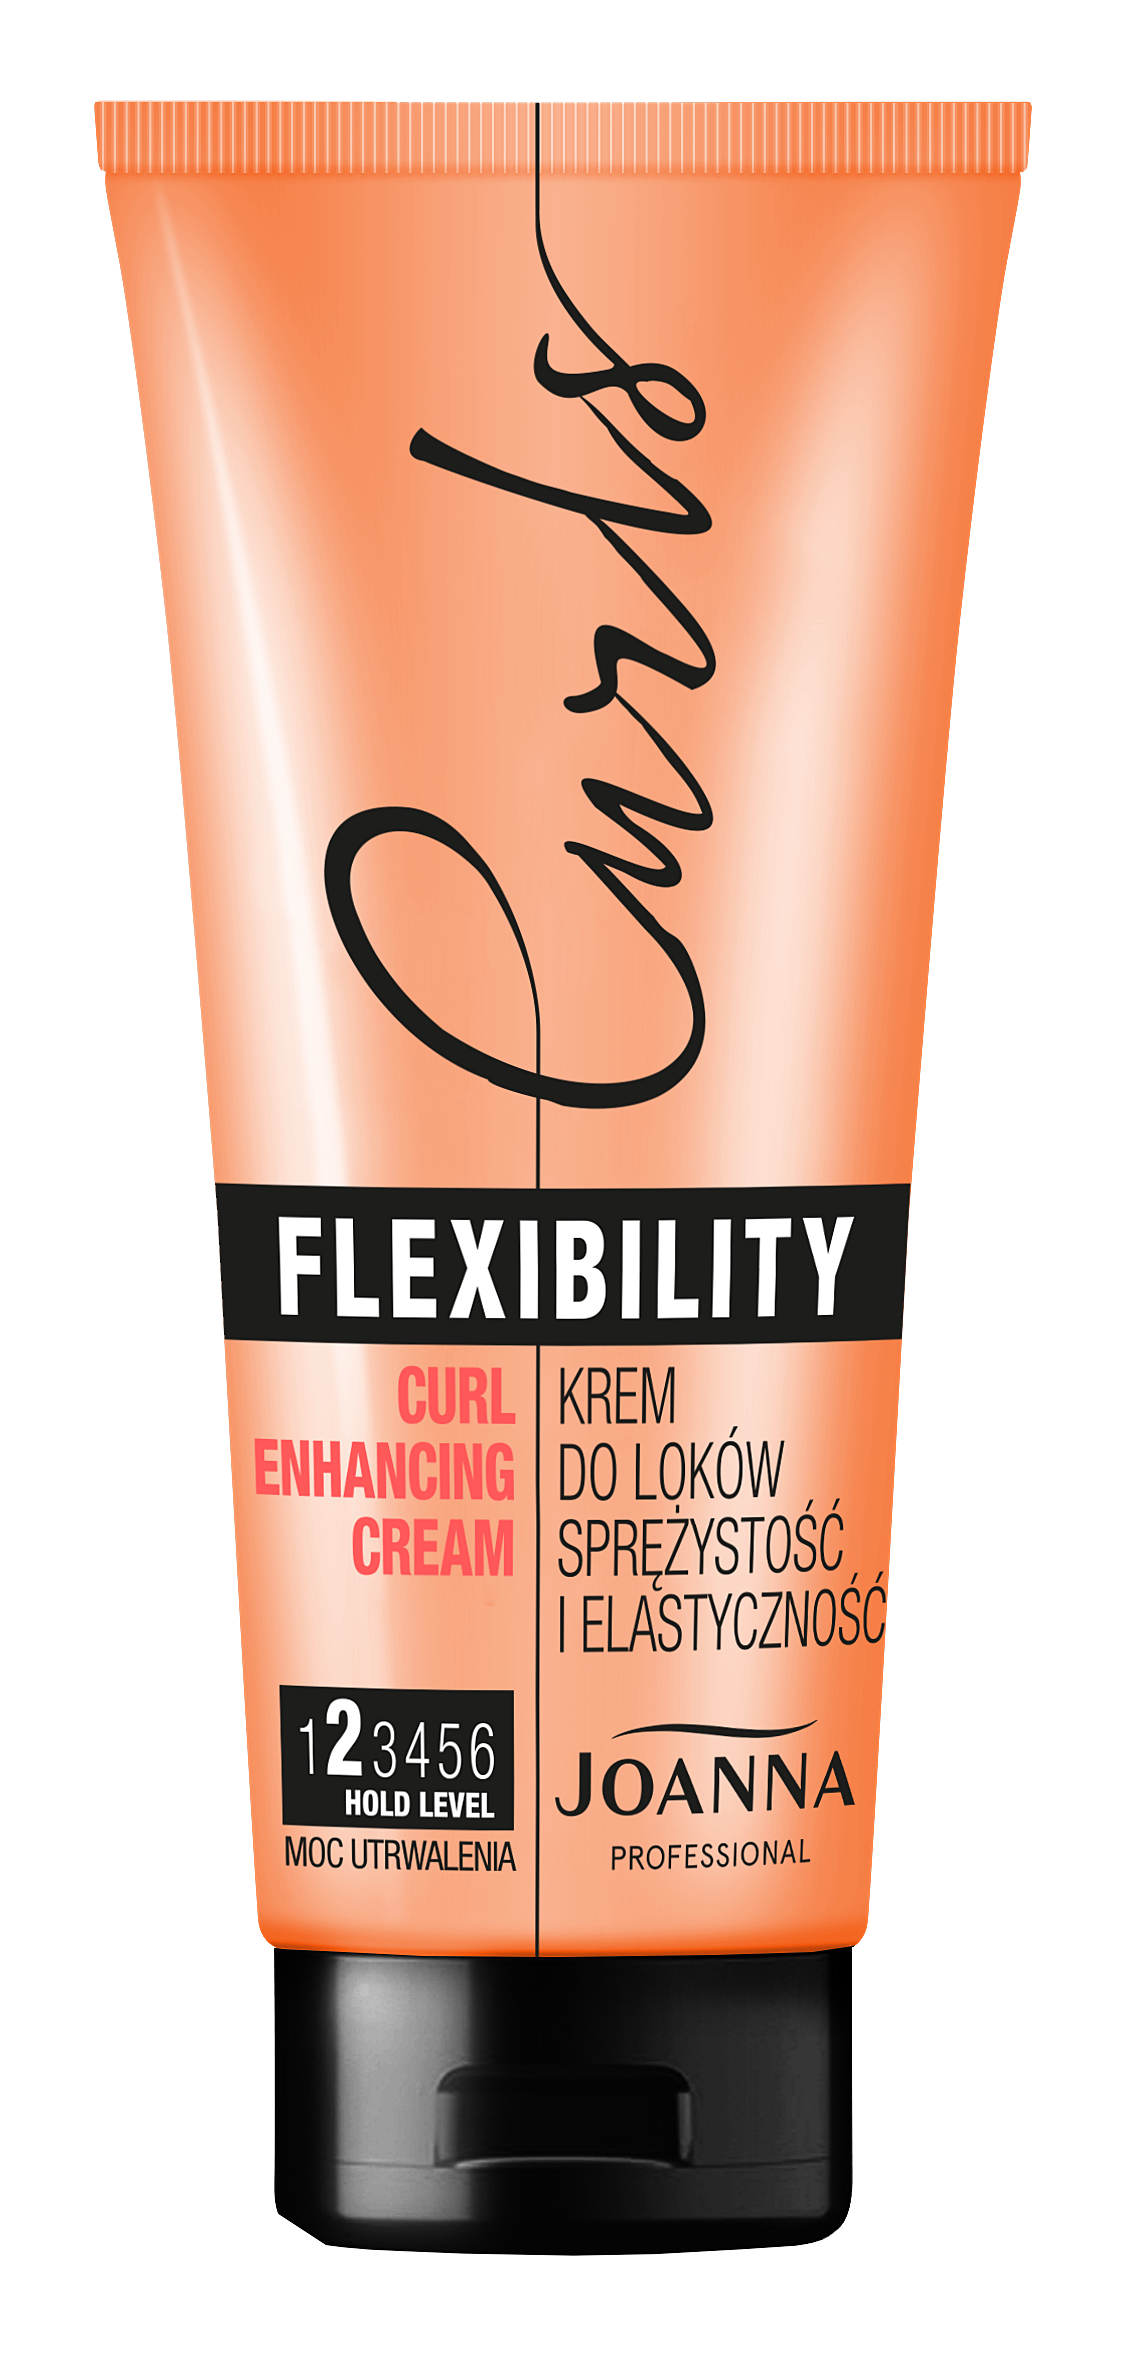 Joanna Professional Flexibility Curls krem do loków sprężystość i elastyczność, 200g